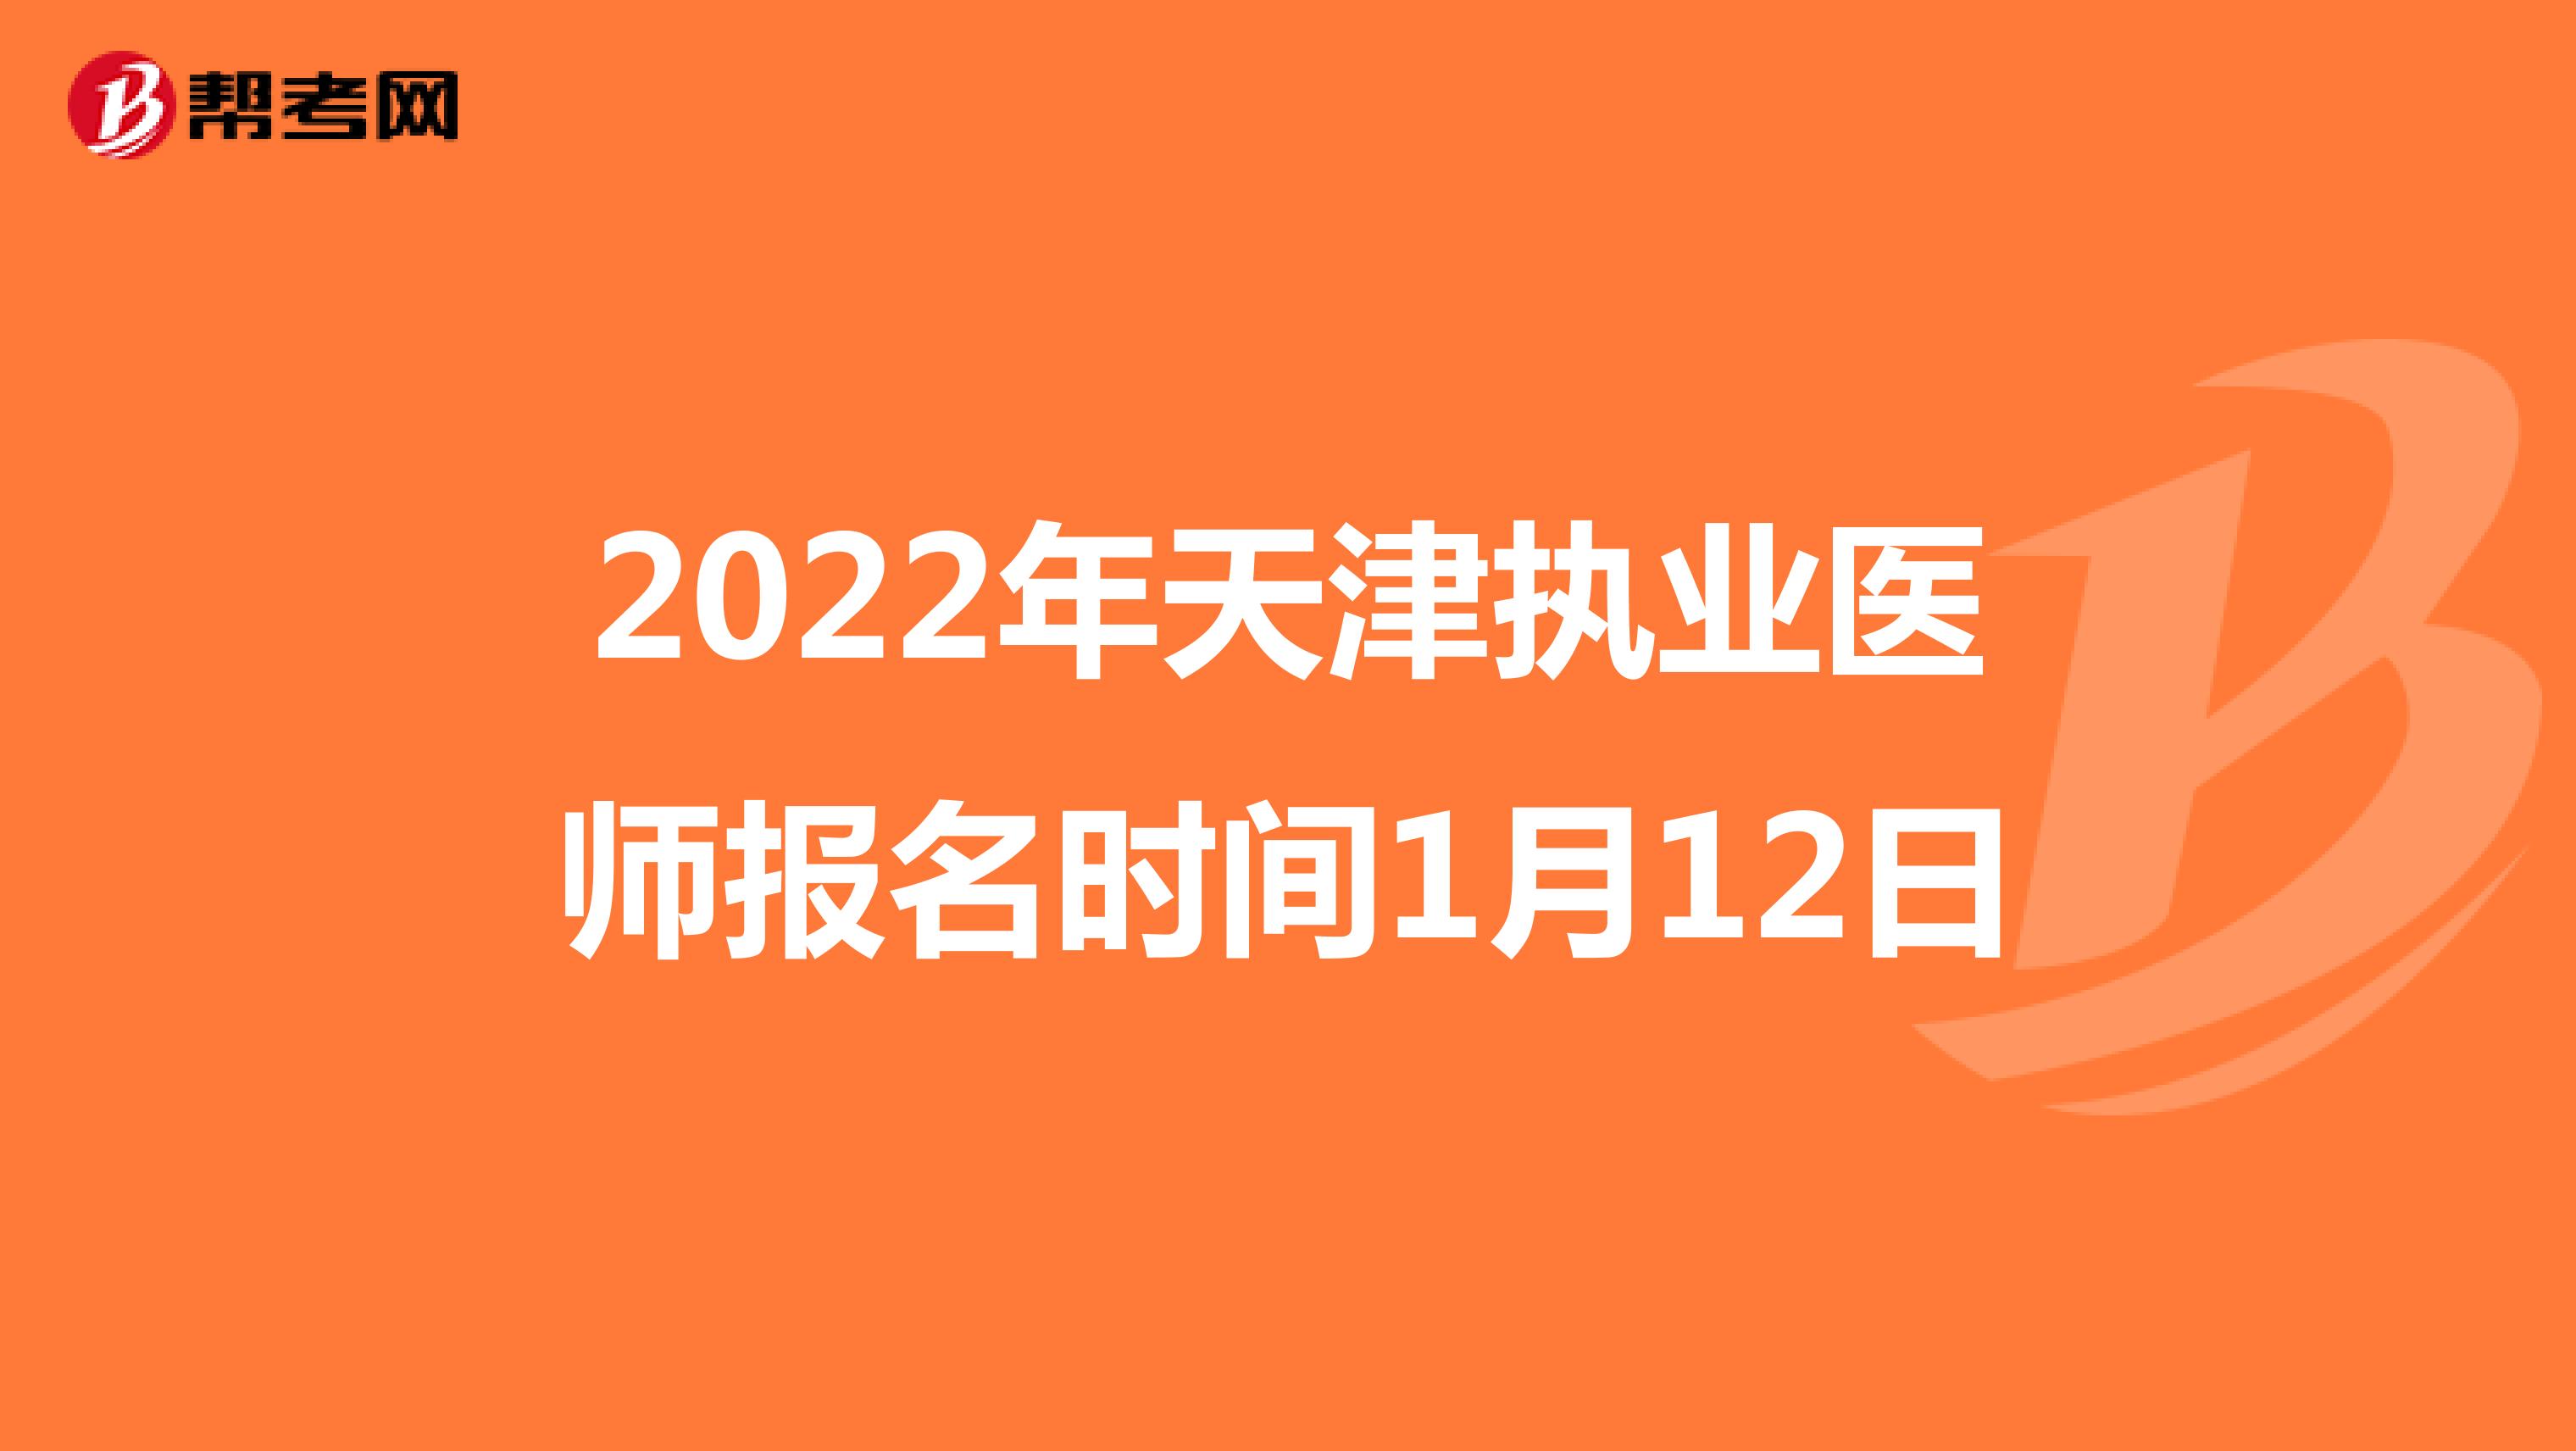 2022年天津执业医师报名时间1月12日